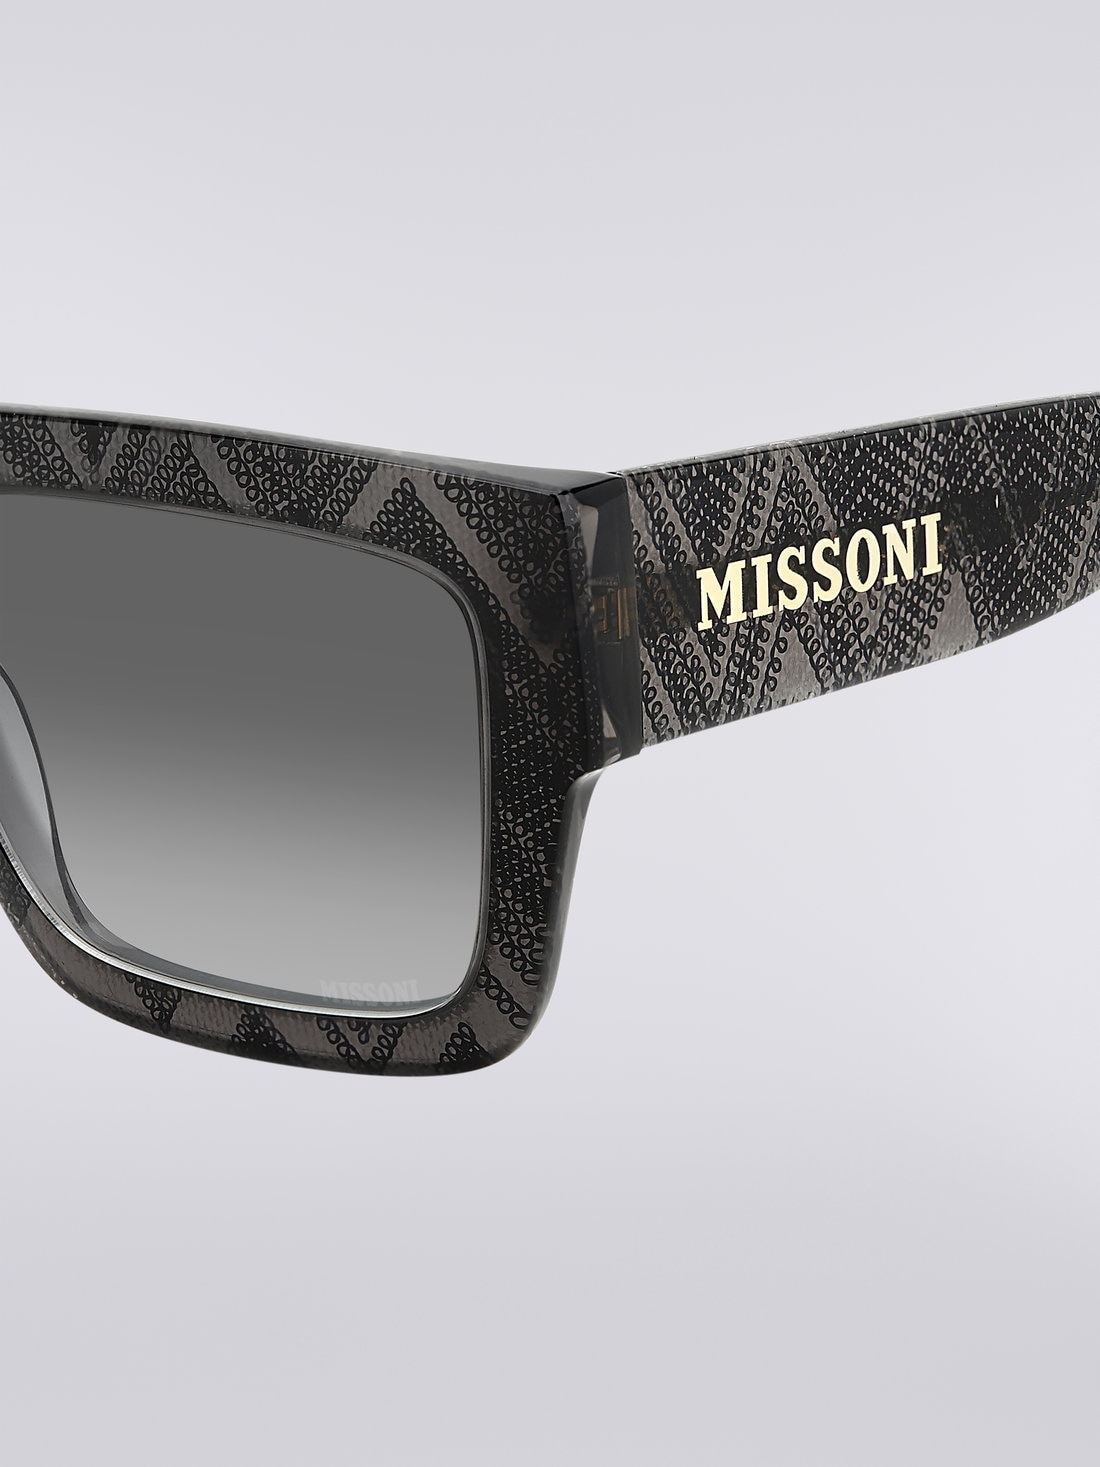 Missoni Dna Acetate Sunglasses, Multicoloured  - 8051575840272 - 3